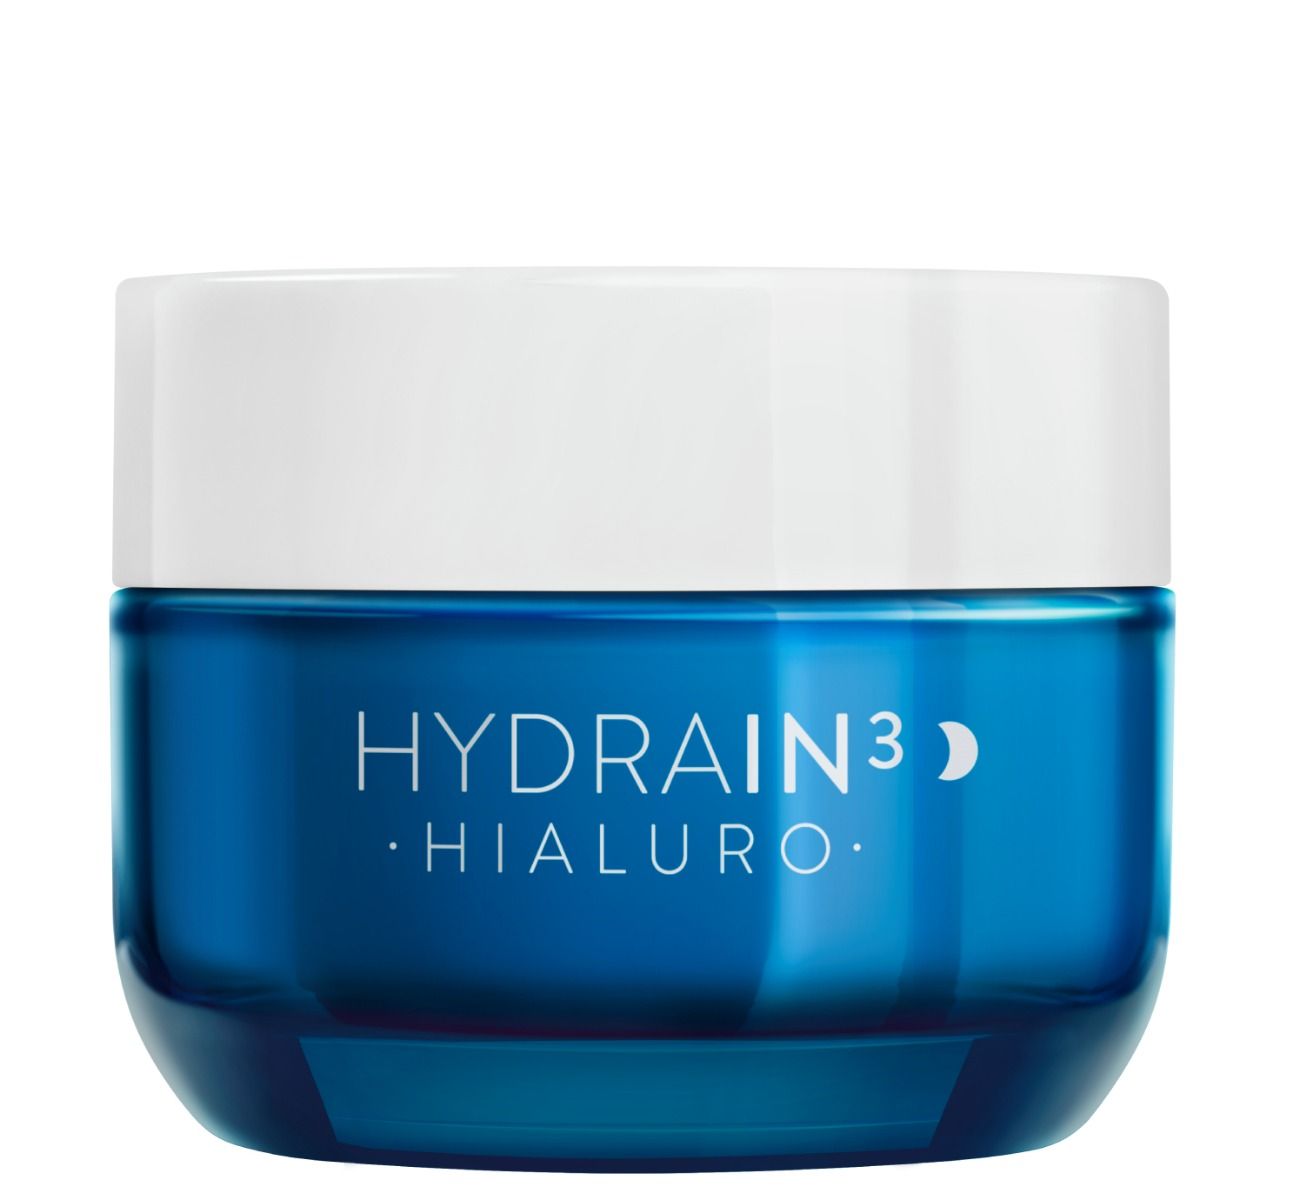 Dermedic Hydrain3 Hialuro крем для лица на ночь, 50 ml dermedic гель крем для умывания 200 мл dermedic hydrain3